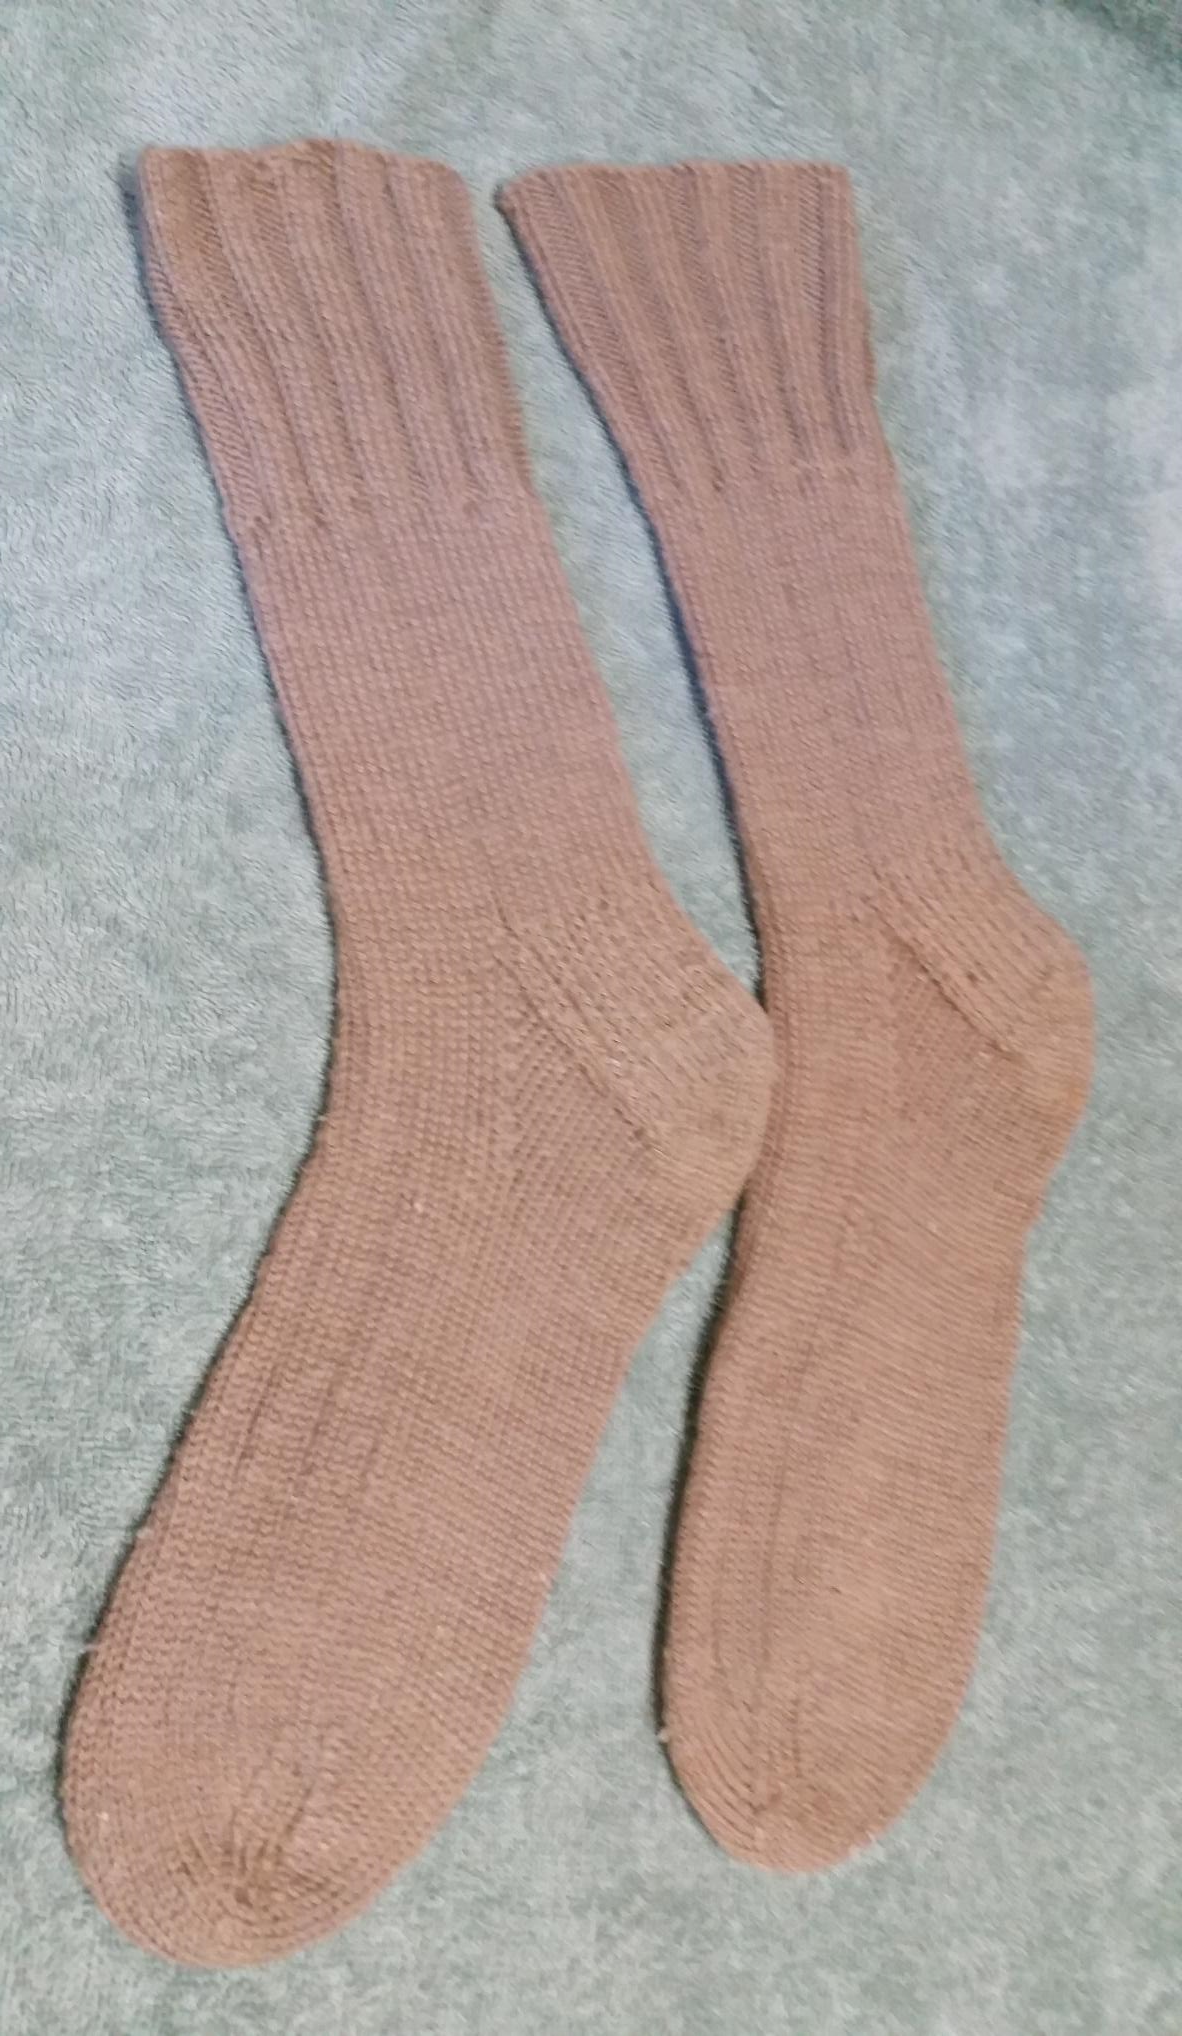 Hand-knitted socks